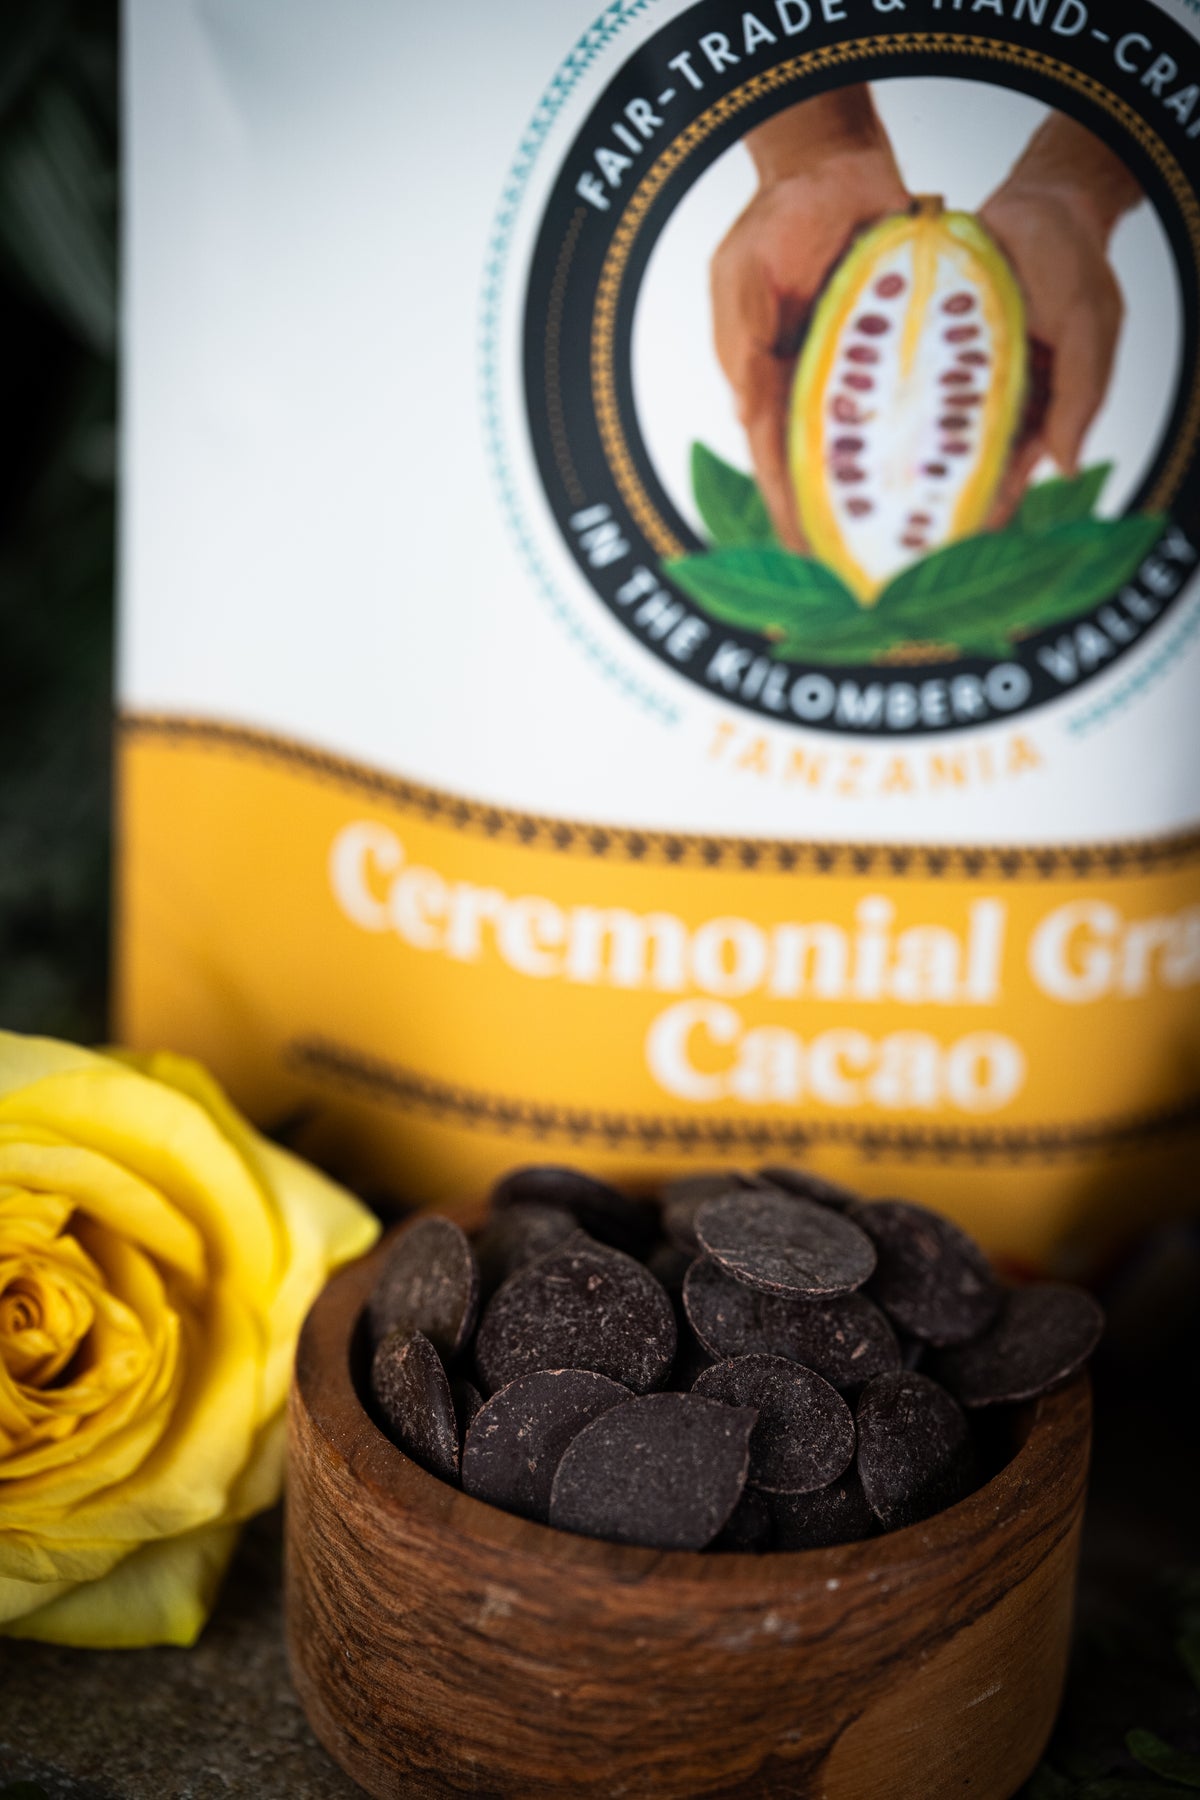 Tanzanian Ceremonial Grade Cacao From the Kilombero Valley